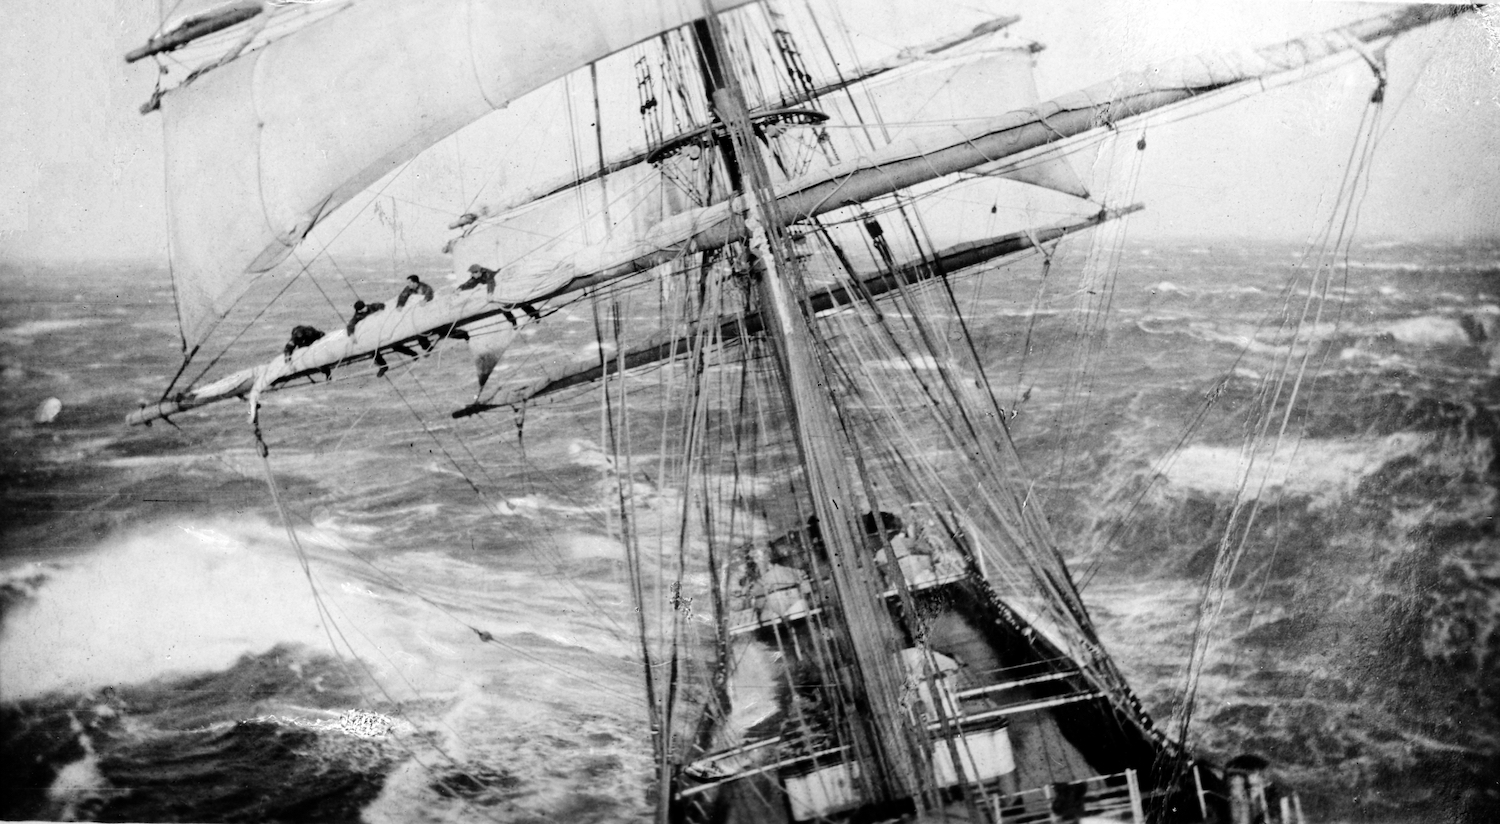 À bord du navire Garthsnaid en mer. Une vue depuis le haut du gréement. Image d’Allan C. Green, vers 1920.